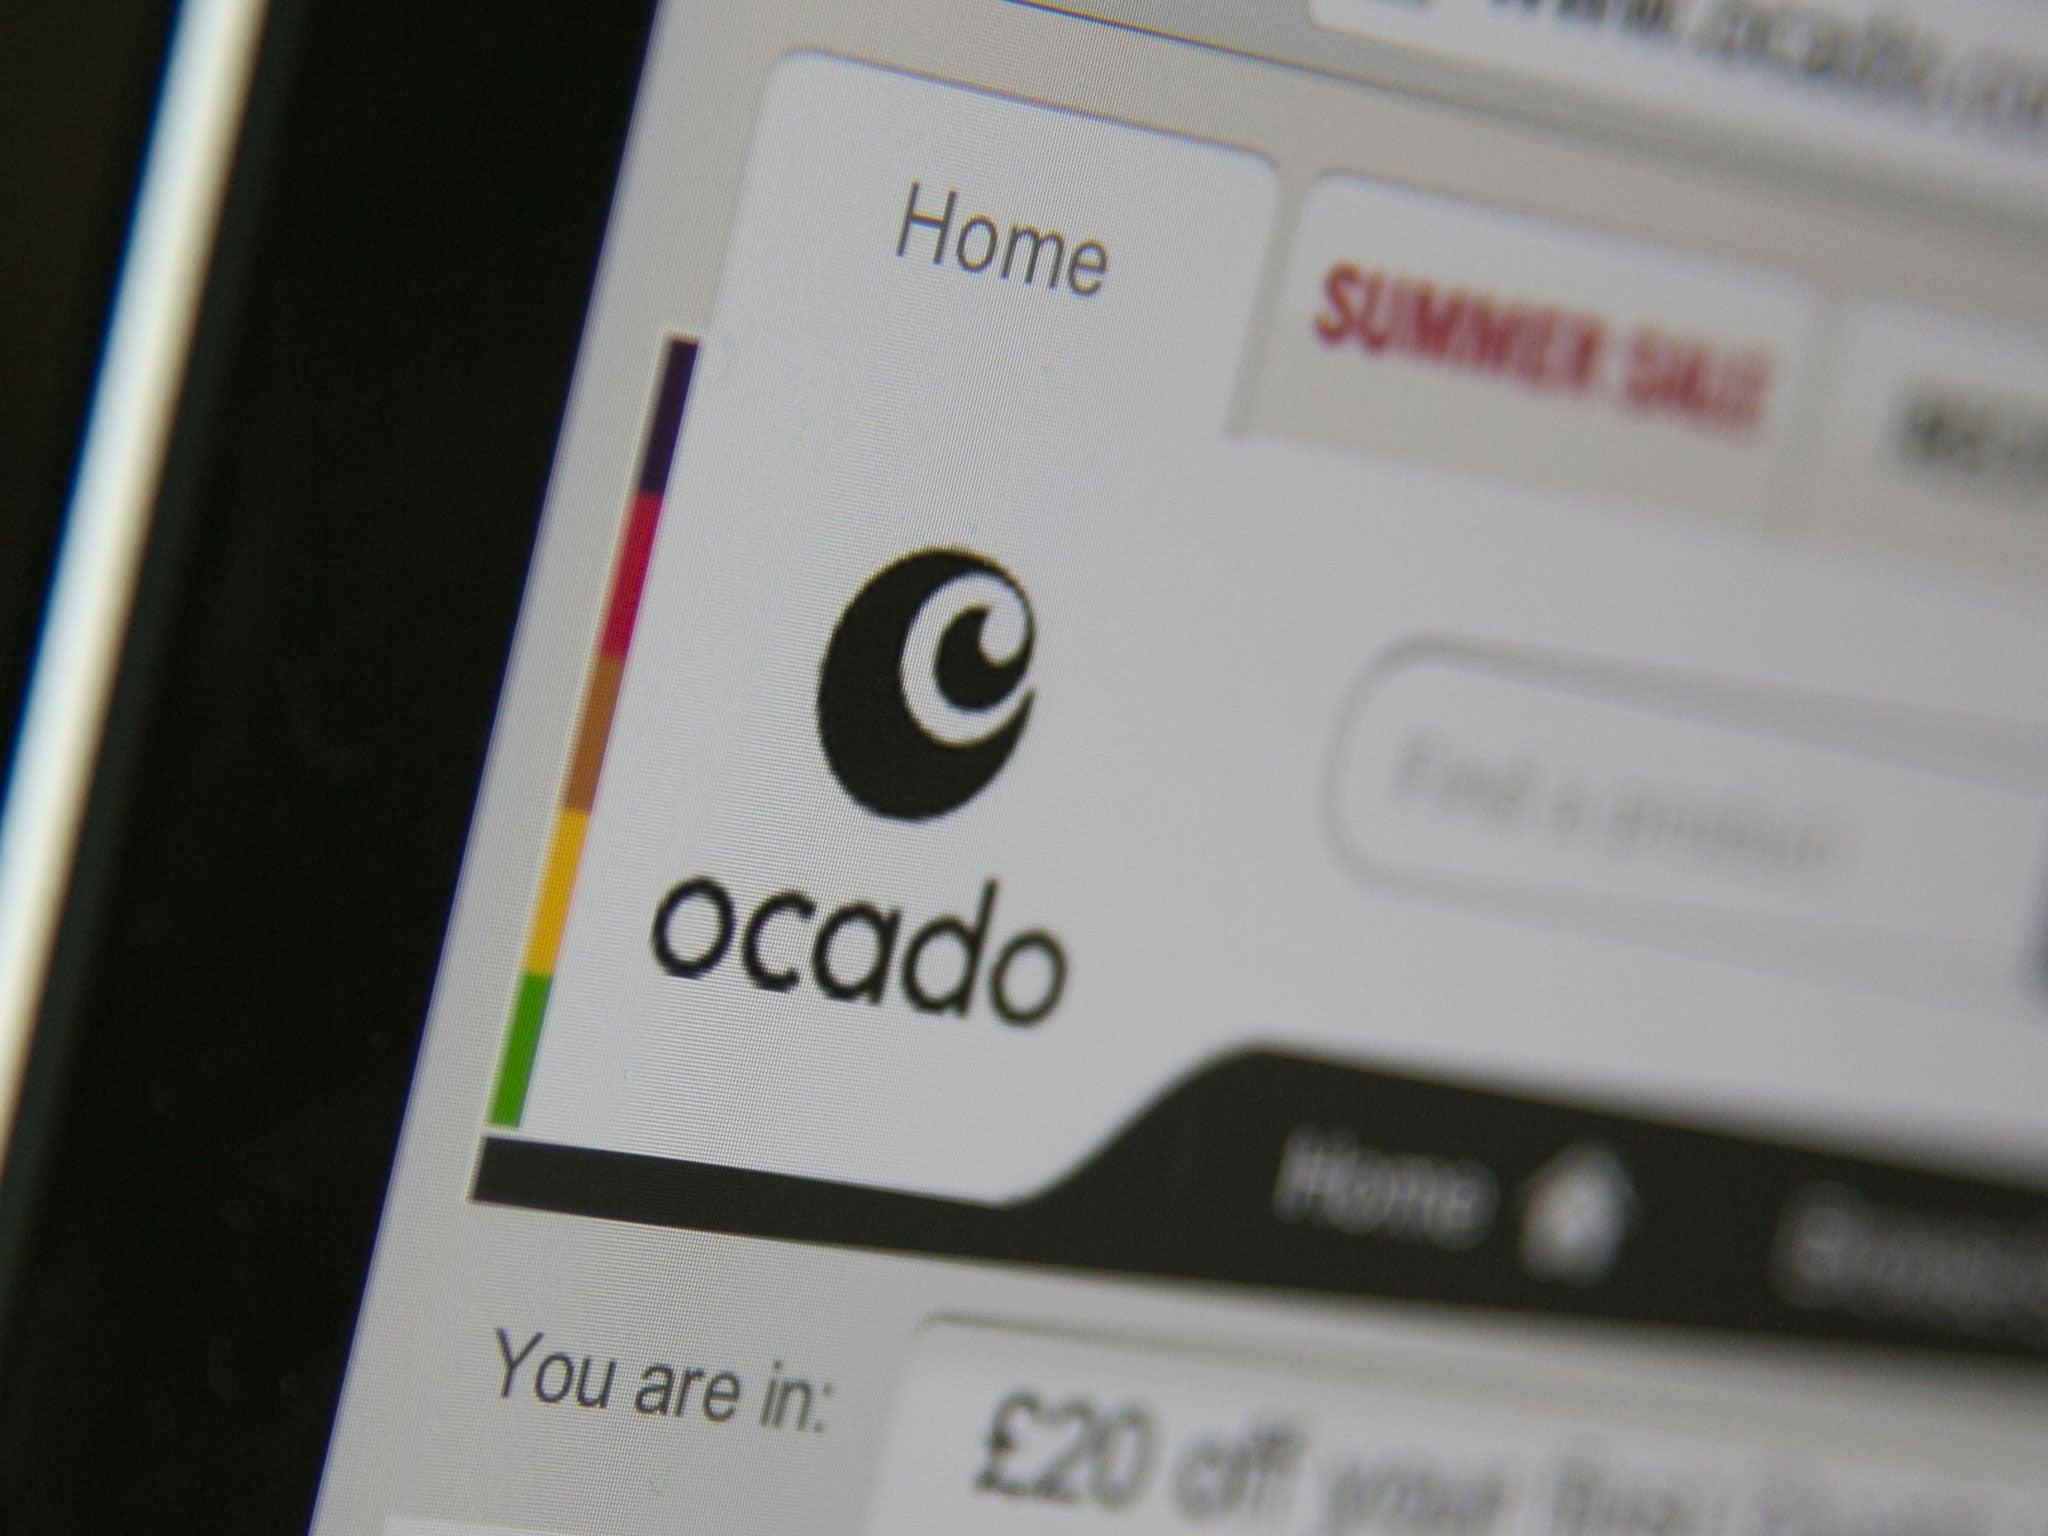 The Ocado website